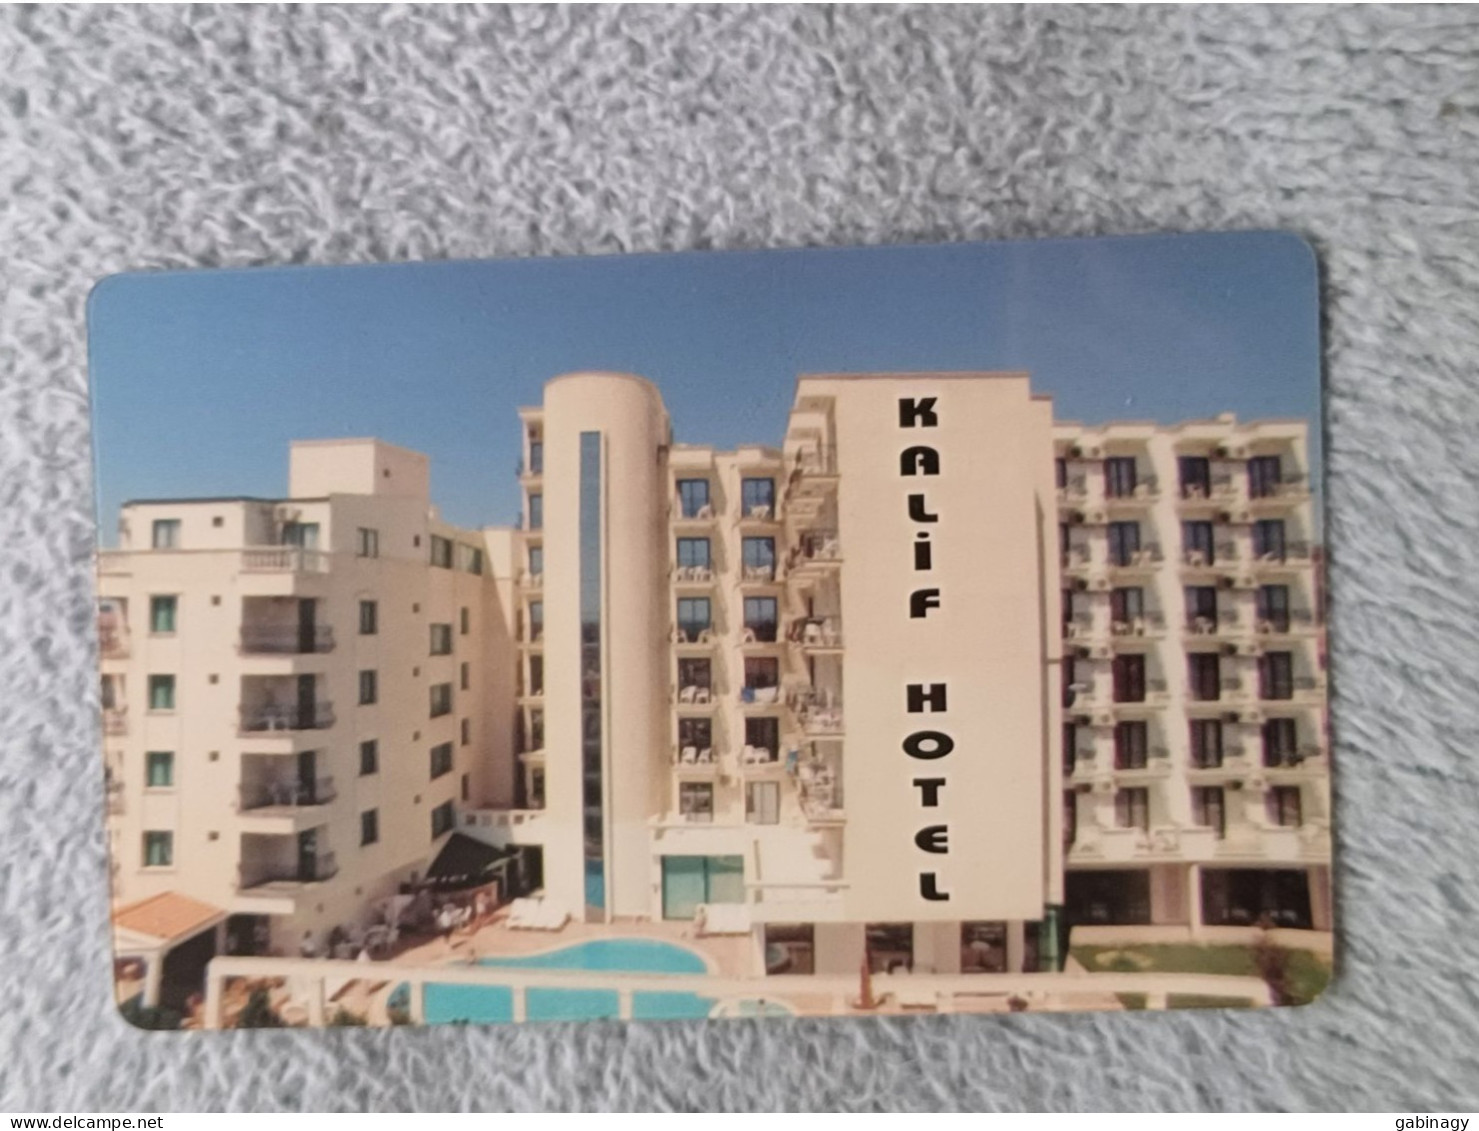 HOTEL KEYS - 2549 - TURKEY - KALIF HOTEL - Hotel Keycards